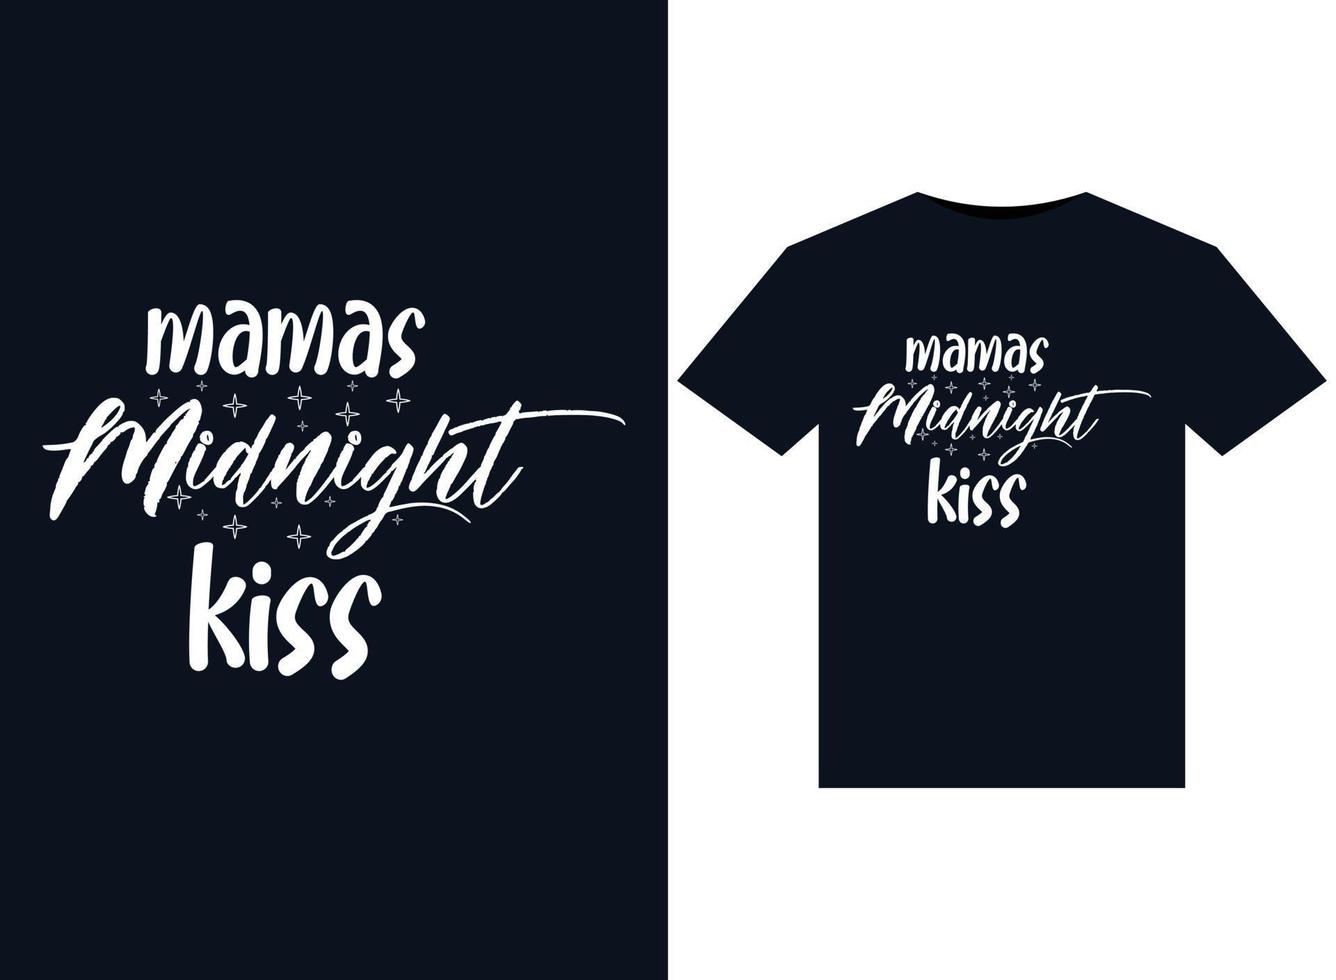 mama's middernacht kus illustraties voor drukklare t-shirts ontwerp vector